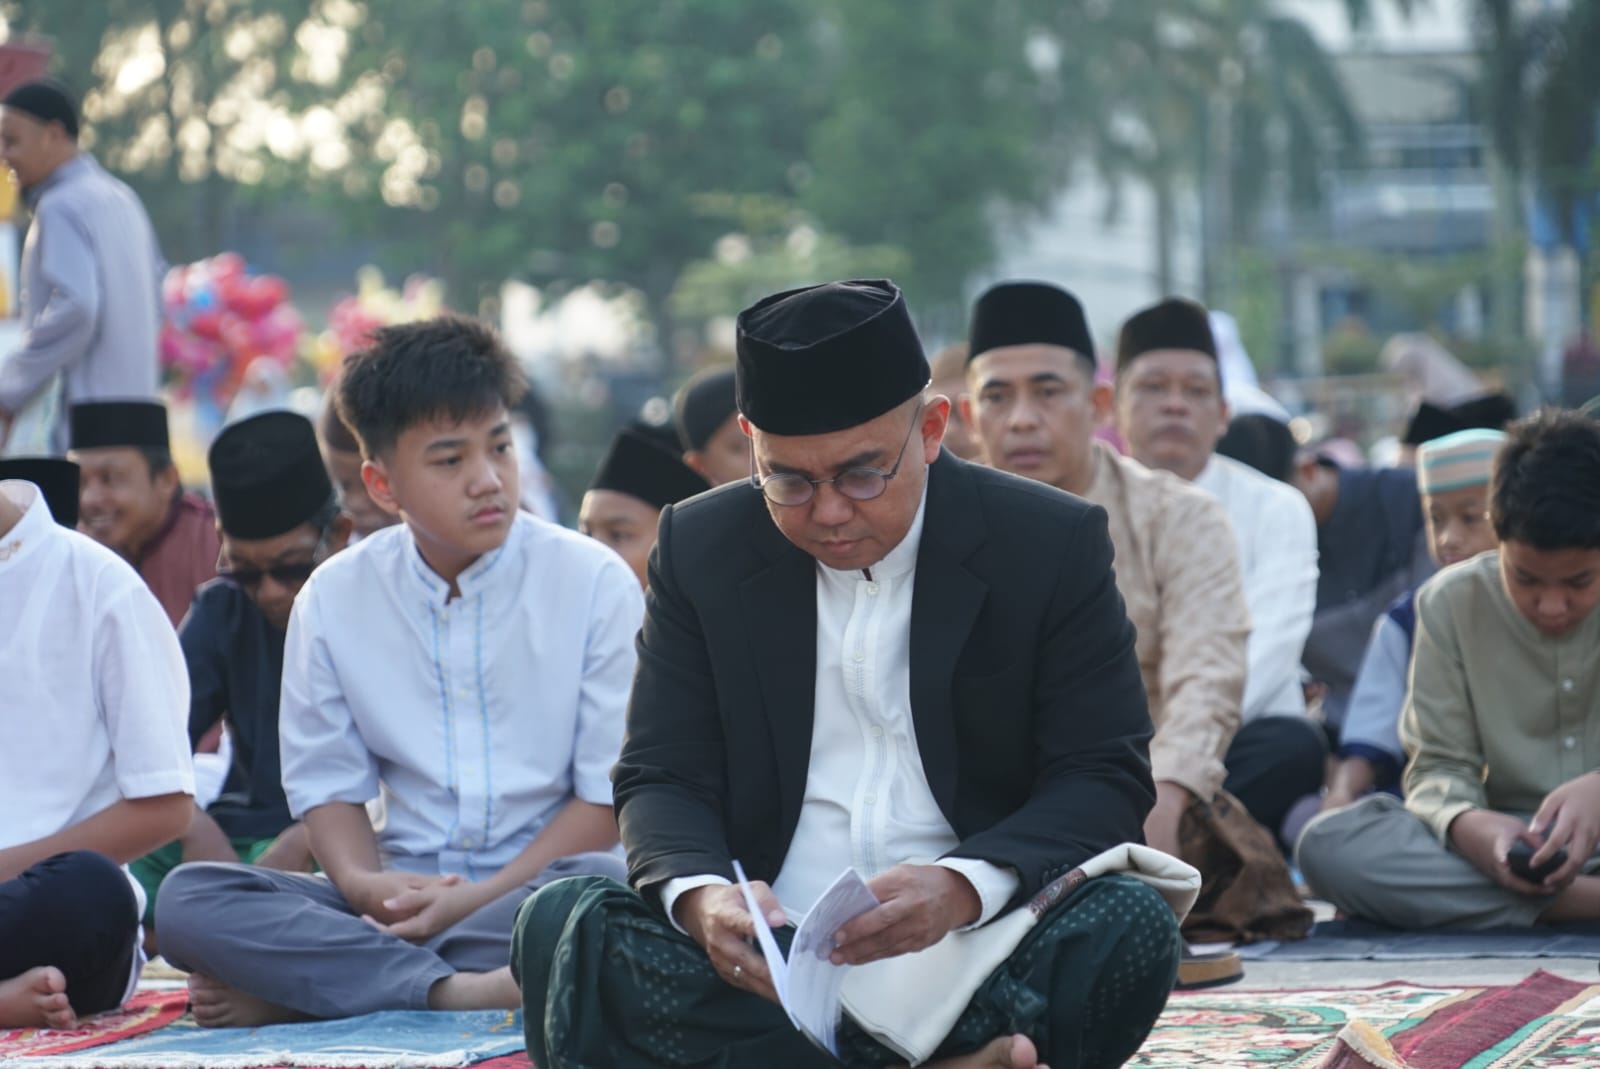 Teks Foto: Walikota Molen Sholat Jama'ah Hari Raya Idul Fitri 1444 H di Alun-alun Taman Merdeka (Foto Humas)